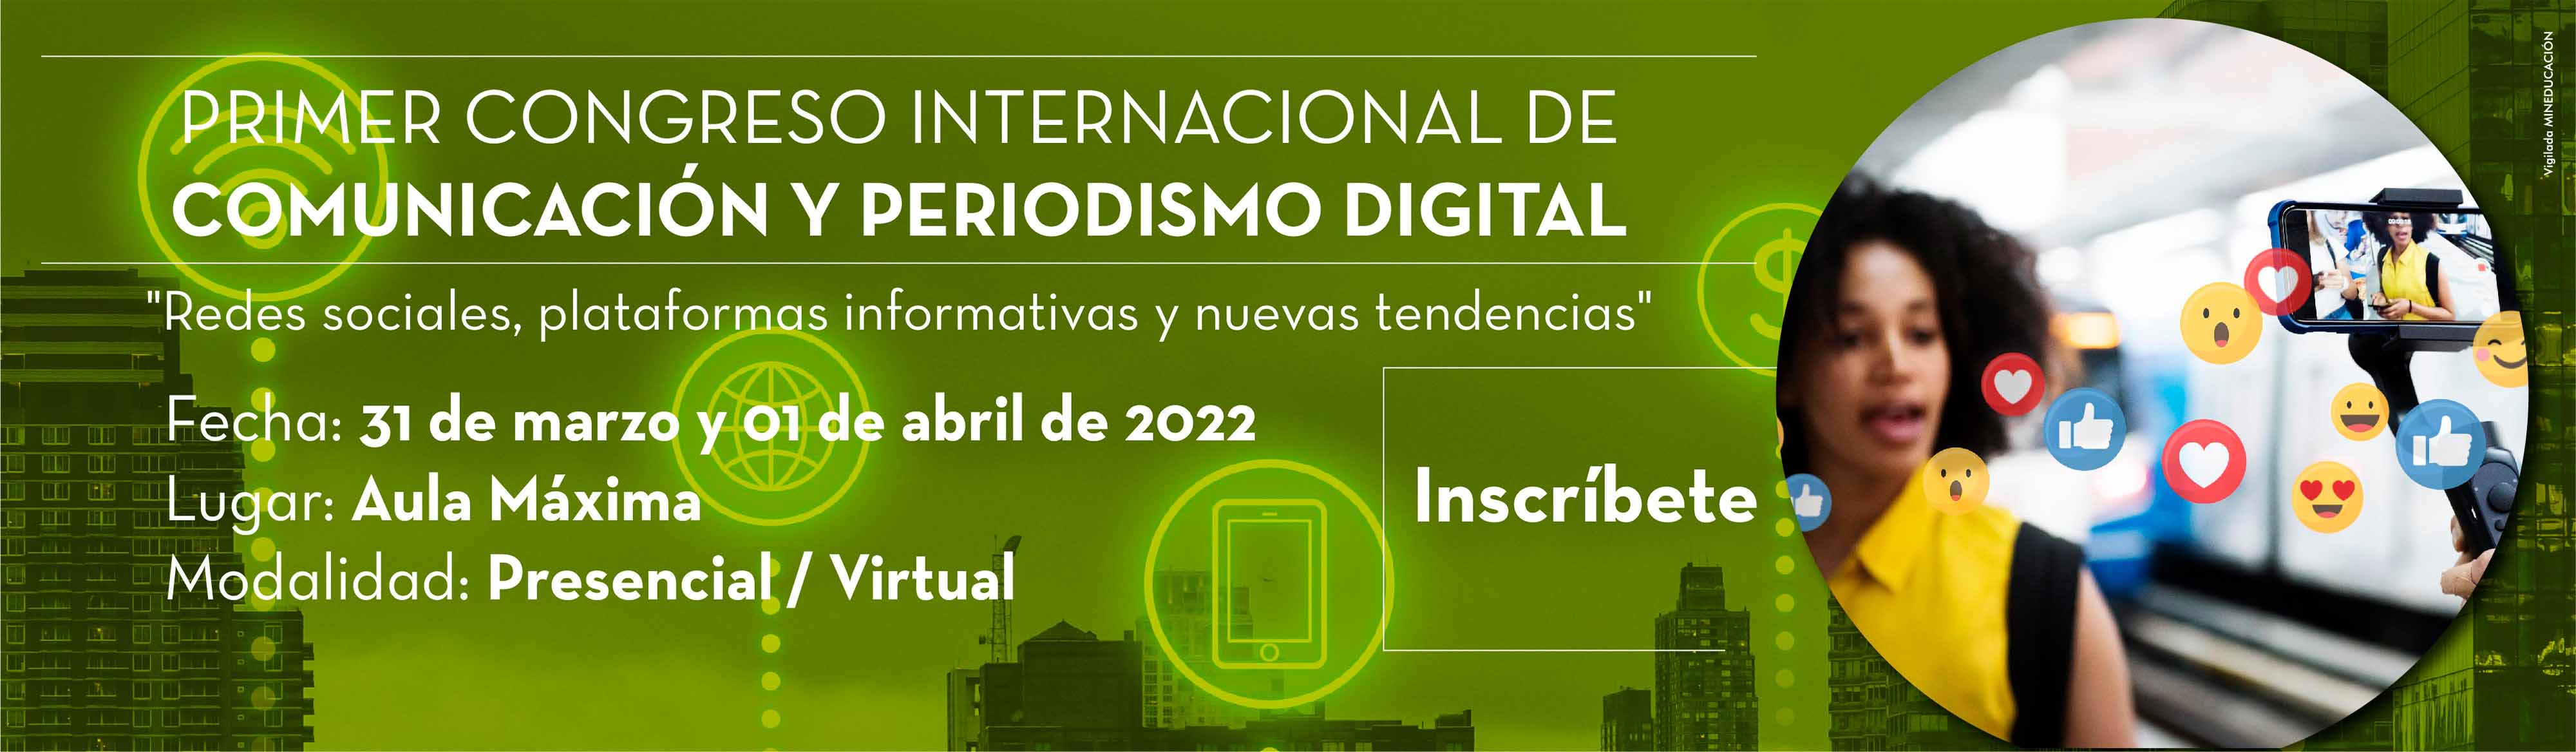 La Universidad La Gran Colombia presenta su Primer Congreso Internacional de Comunicación y Periodismo Digital